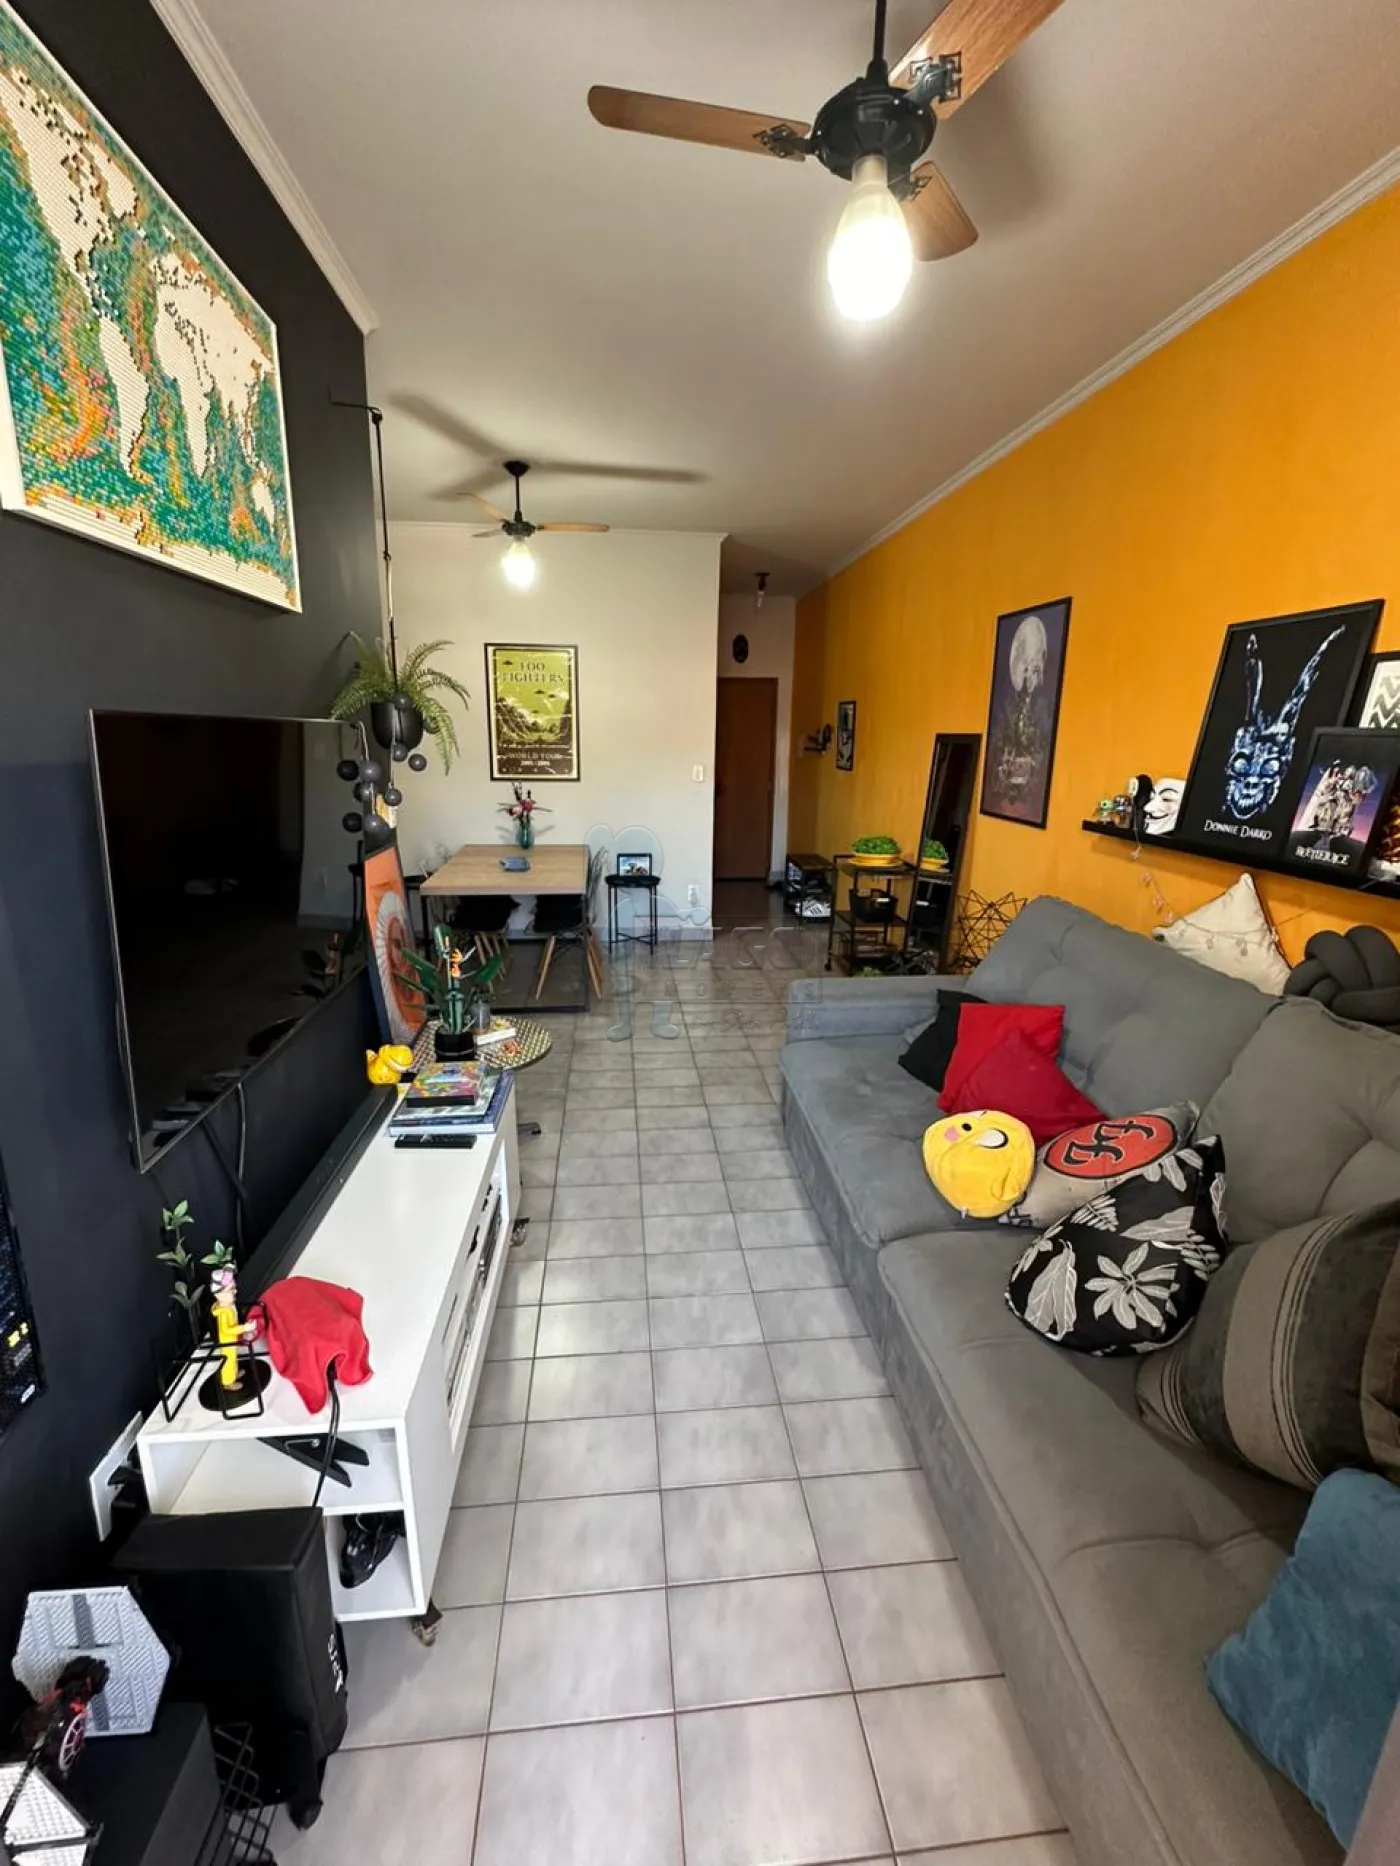 Comprar Apartamentos / Padrão em Ribeirão Preto R$ 300.000,00 - Foto 10